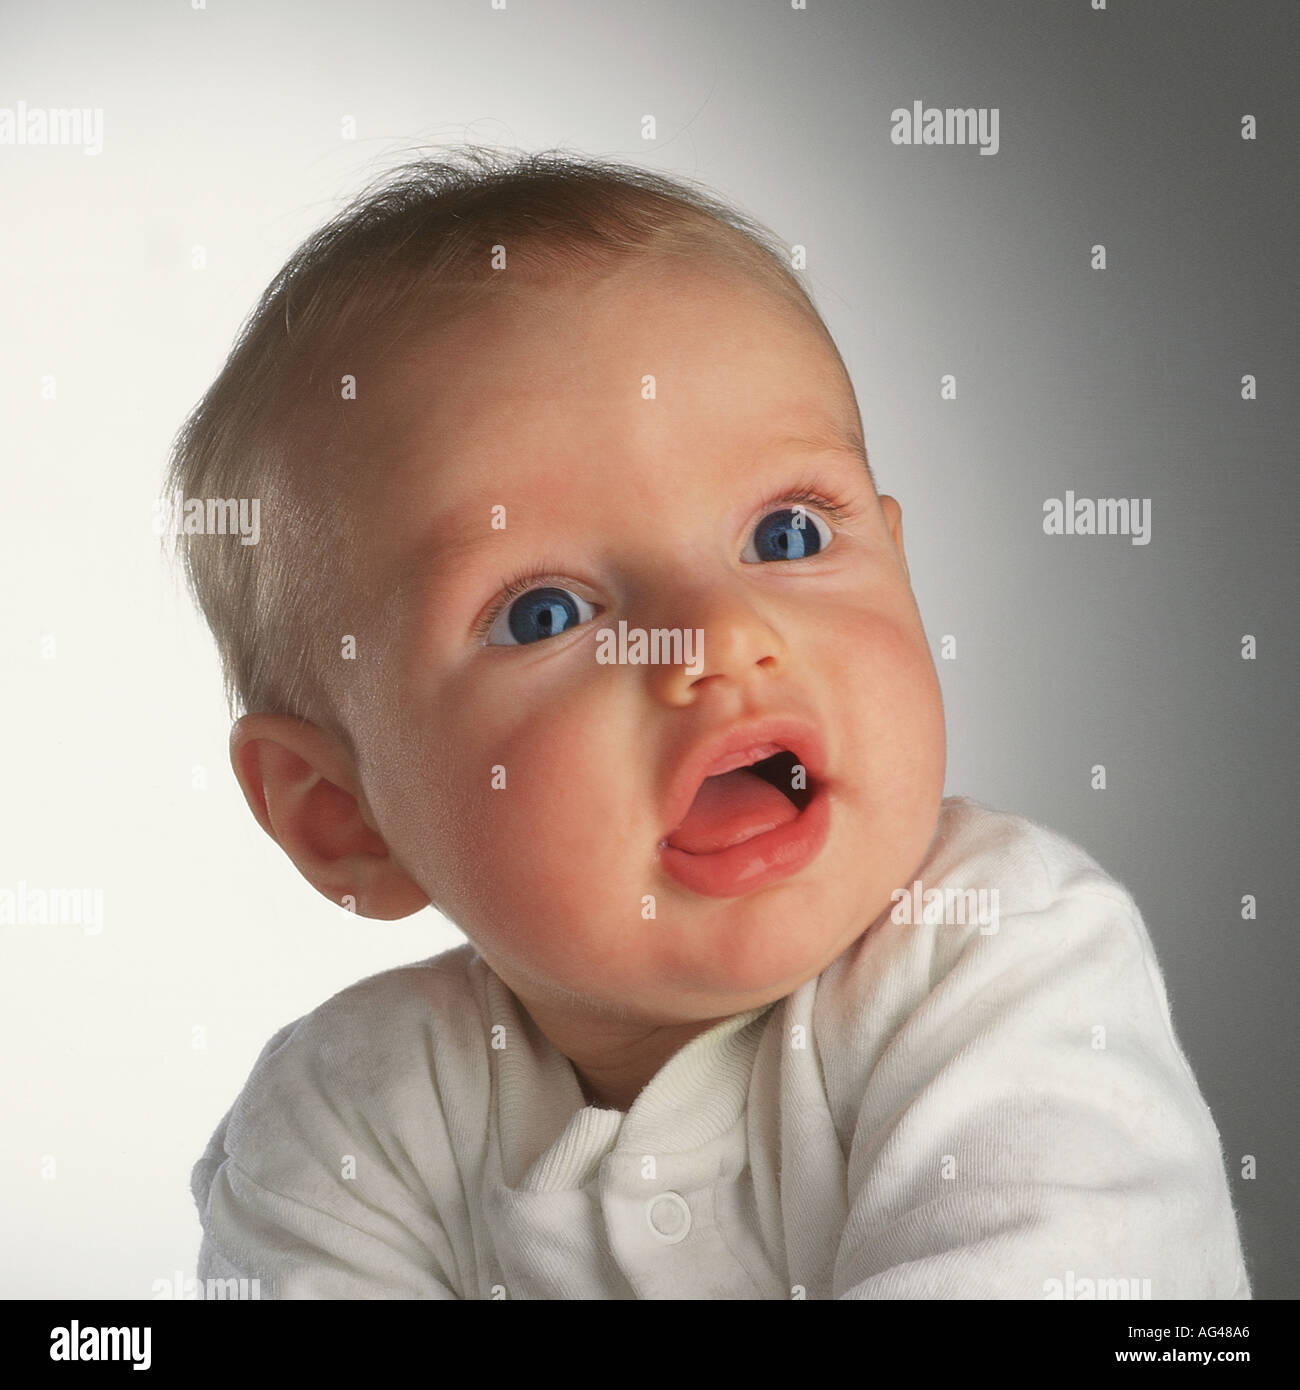 Sechs Monate alter Baby-Junge, der aufschaut. Keine Zähne. Große Augen. Studio-Aufnahme, einfacher Hintergrund. Stockfoto